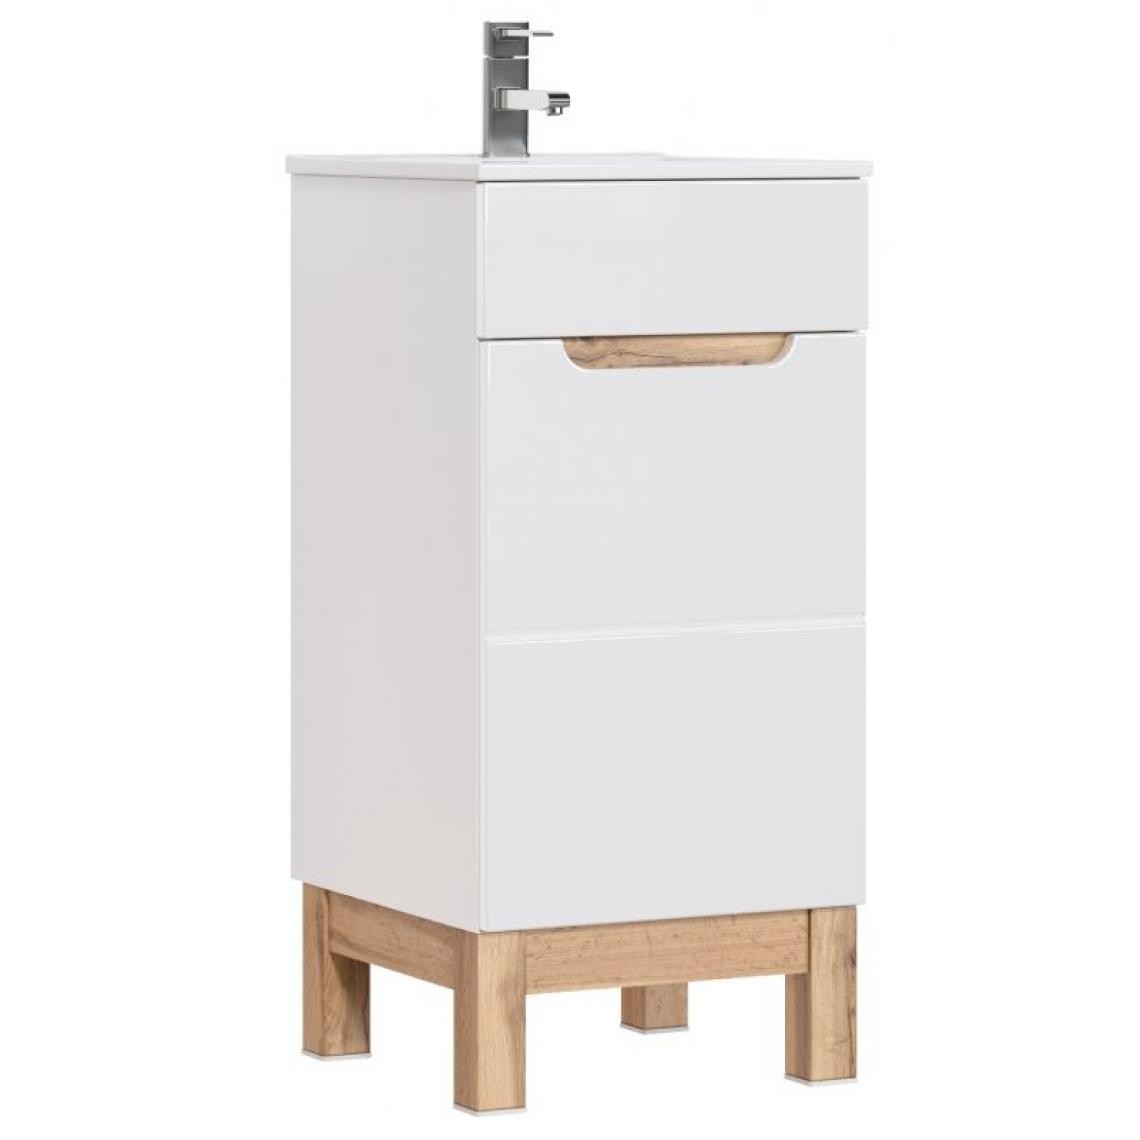 Inconnu - BALI Blanc 823 w / um 1D -40 cm / Meuble sous lavabo blanc 1D 40cm CU-COC-834012 FSC MIX 70% - meuble bas salle de bain